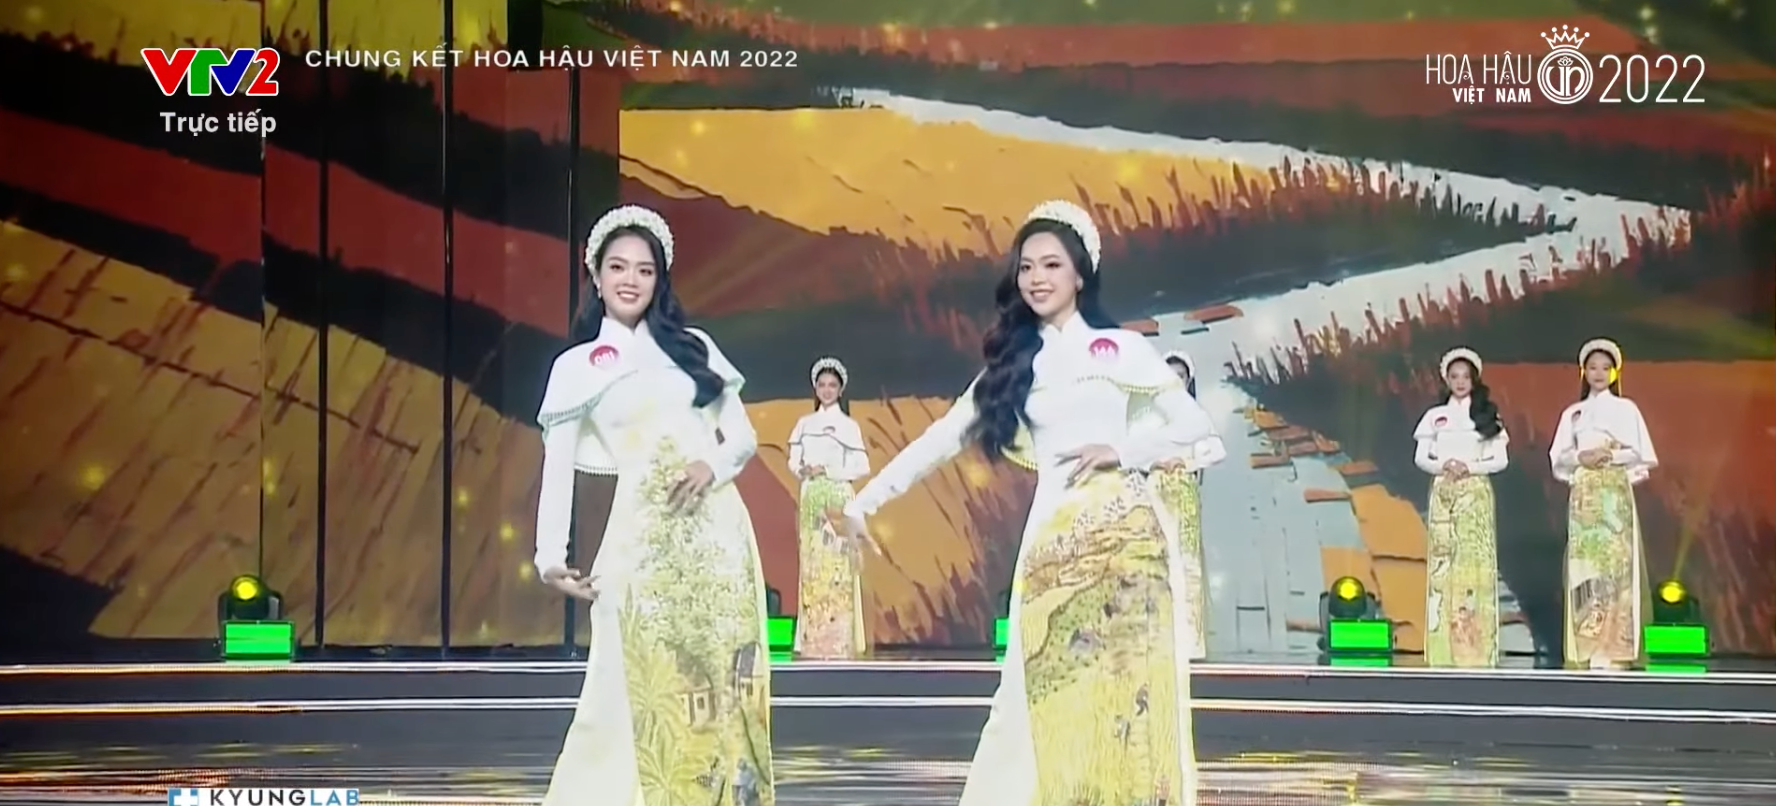 Chung kết Hoa hậu Việt Nam 2022: Tân Hoa hậu chính thức gọi tên Huỳnh Thị Thanh Thuỷ - 39